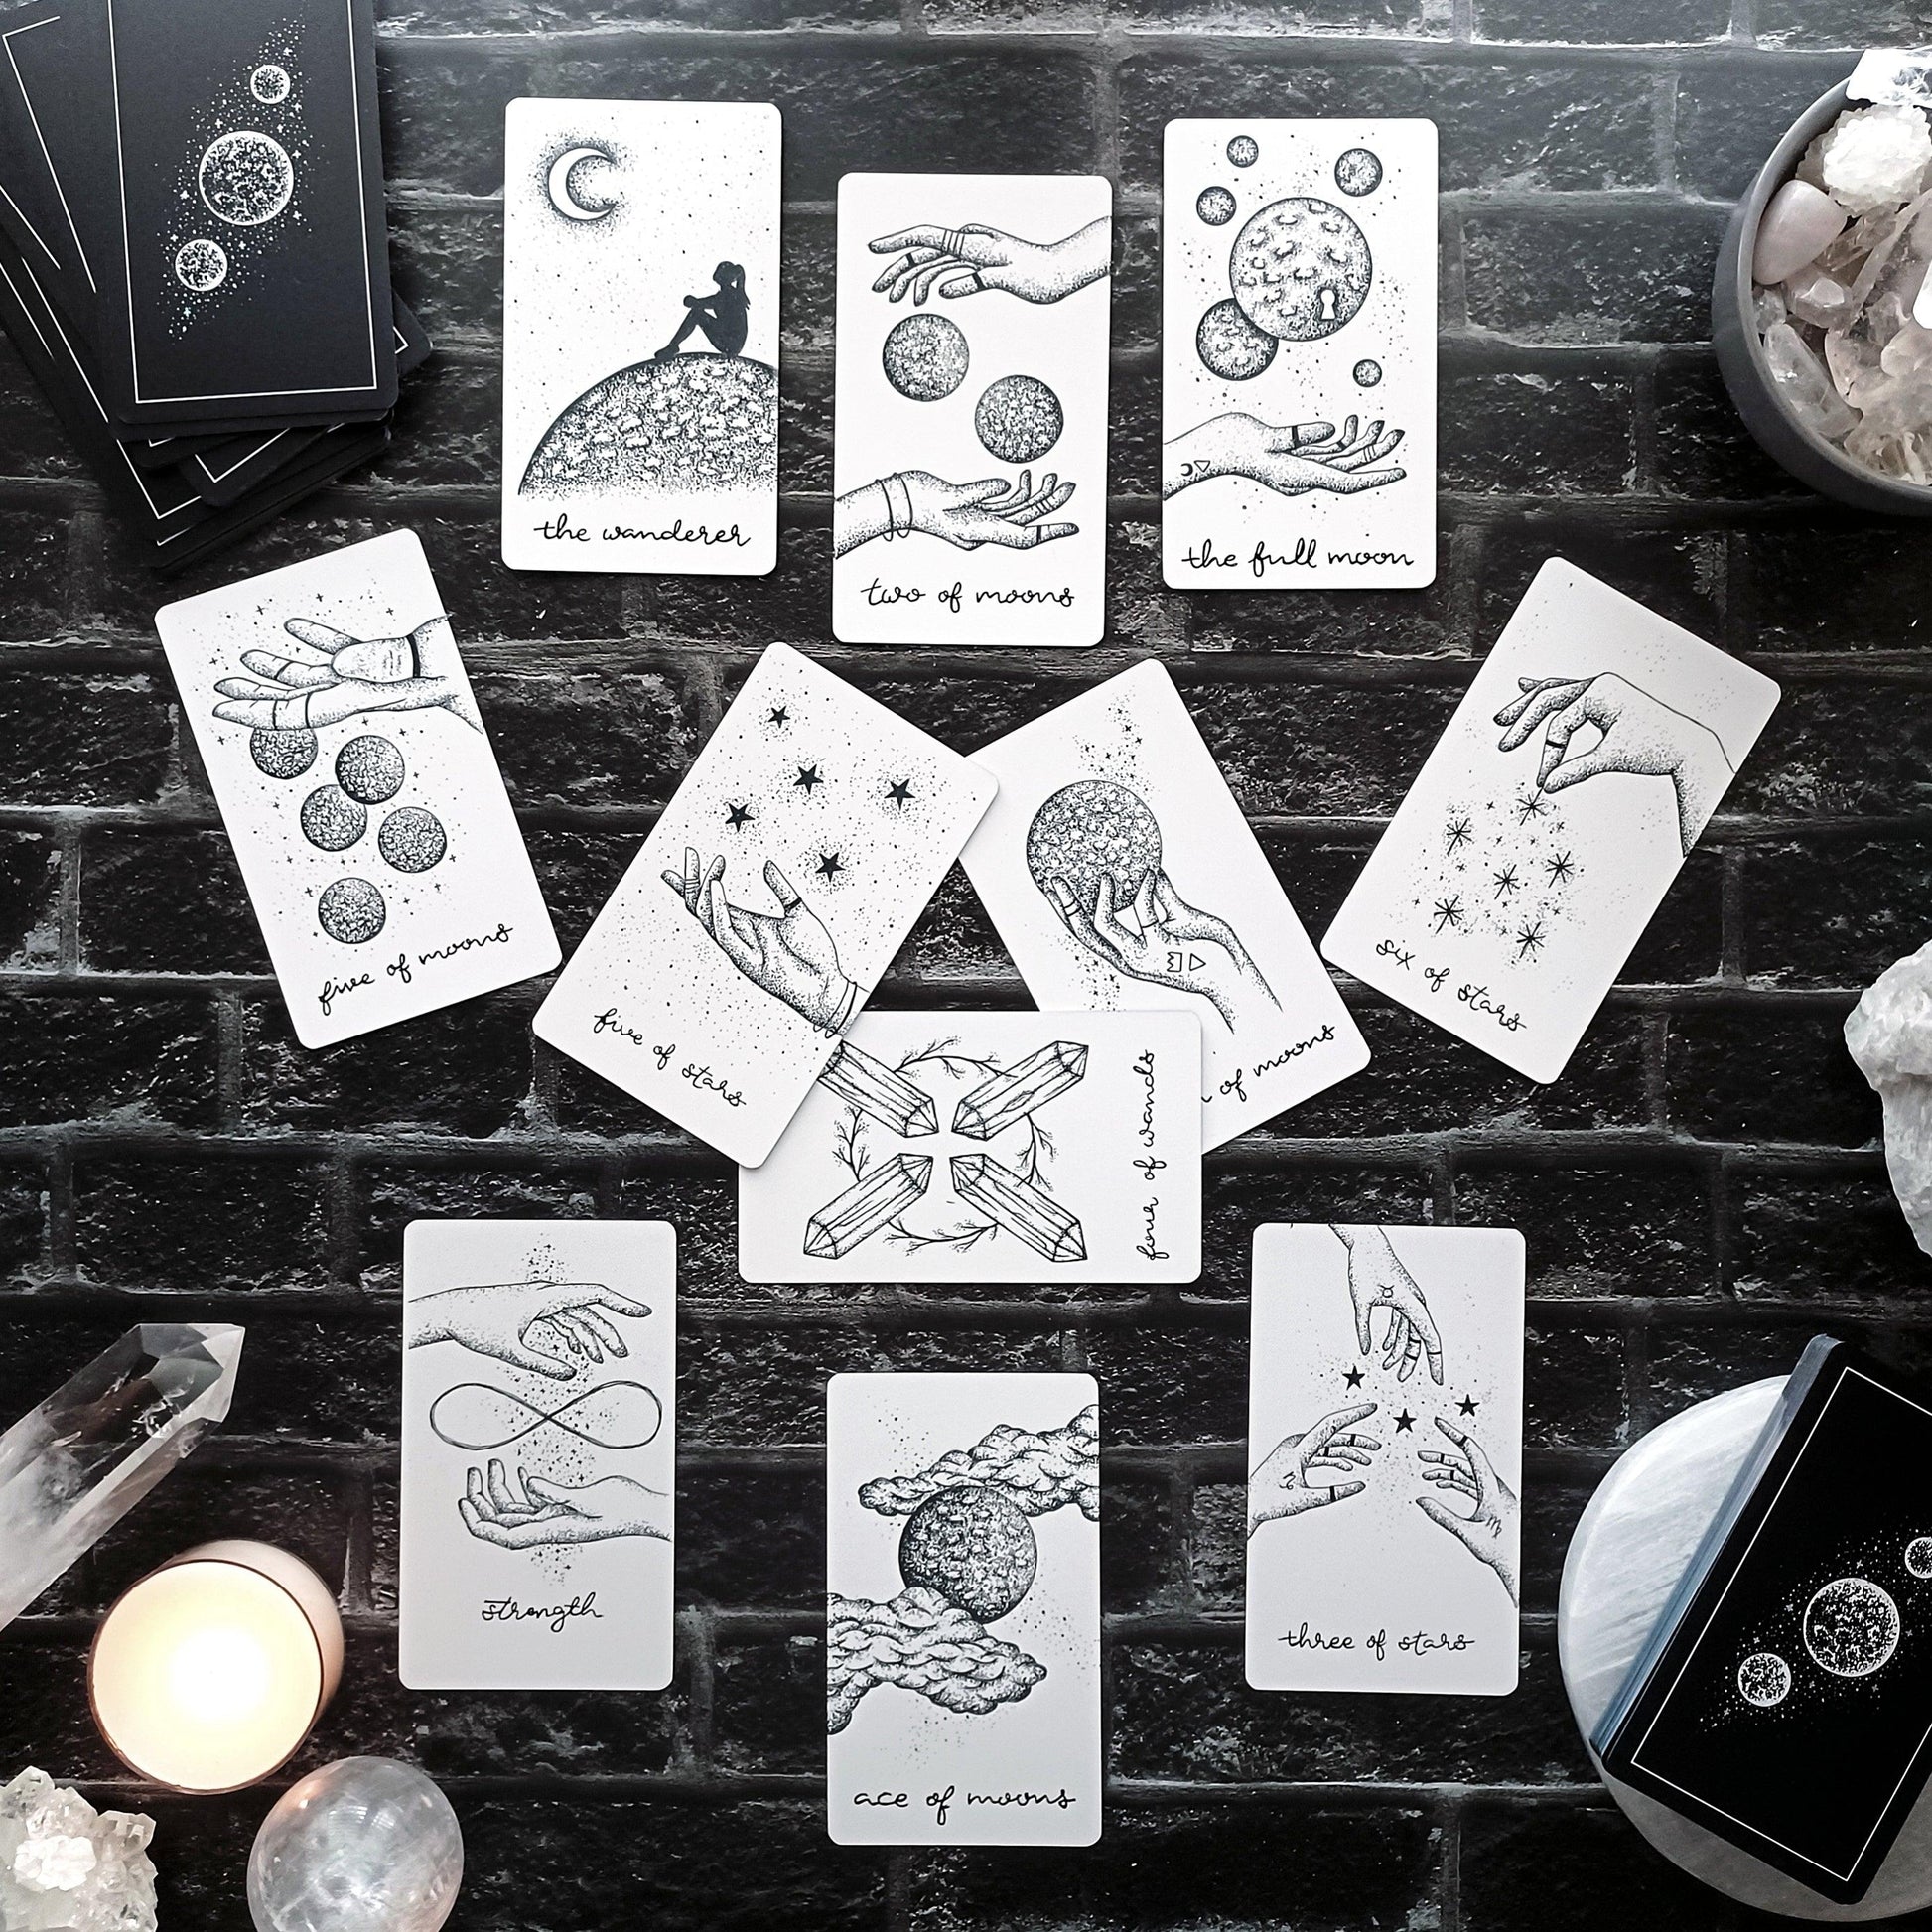 free tarot deck! Wandering Moon Tarot Deck, Celestial Tarot Cards, Crystal Tarot Card Deck, Indie Tarot Deck, Beginner Tarot Deck, Tarot Deck with Guide